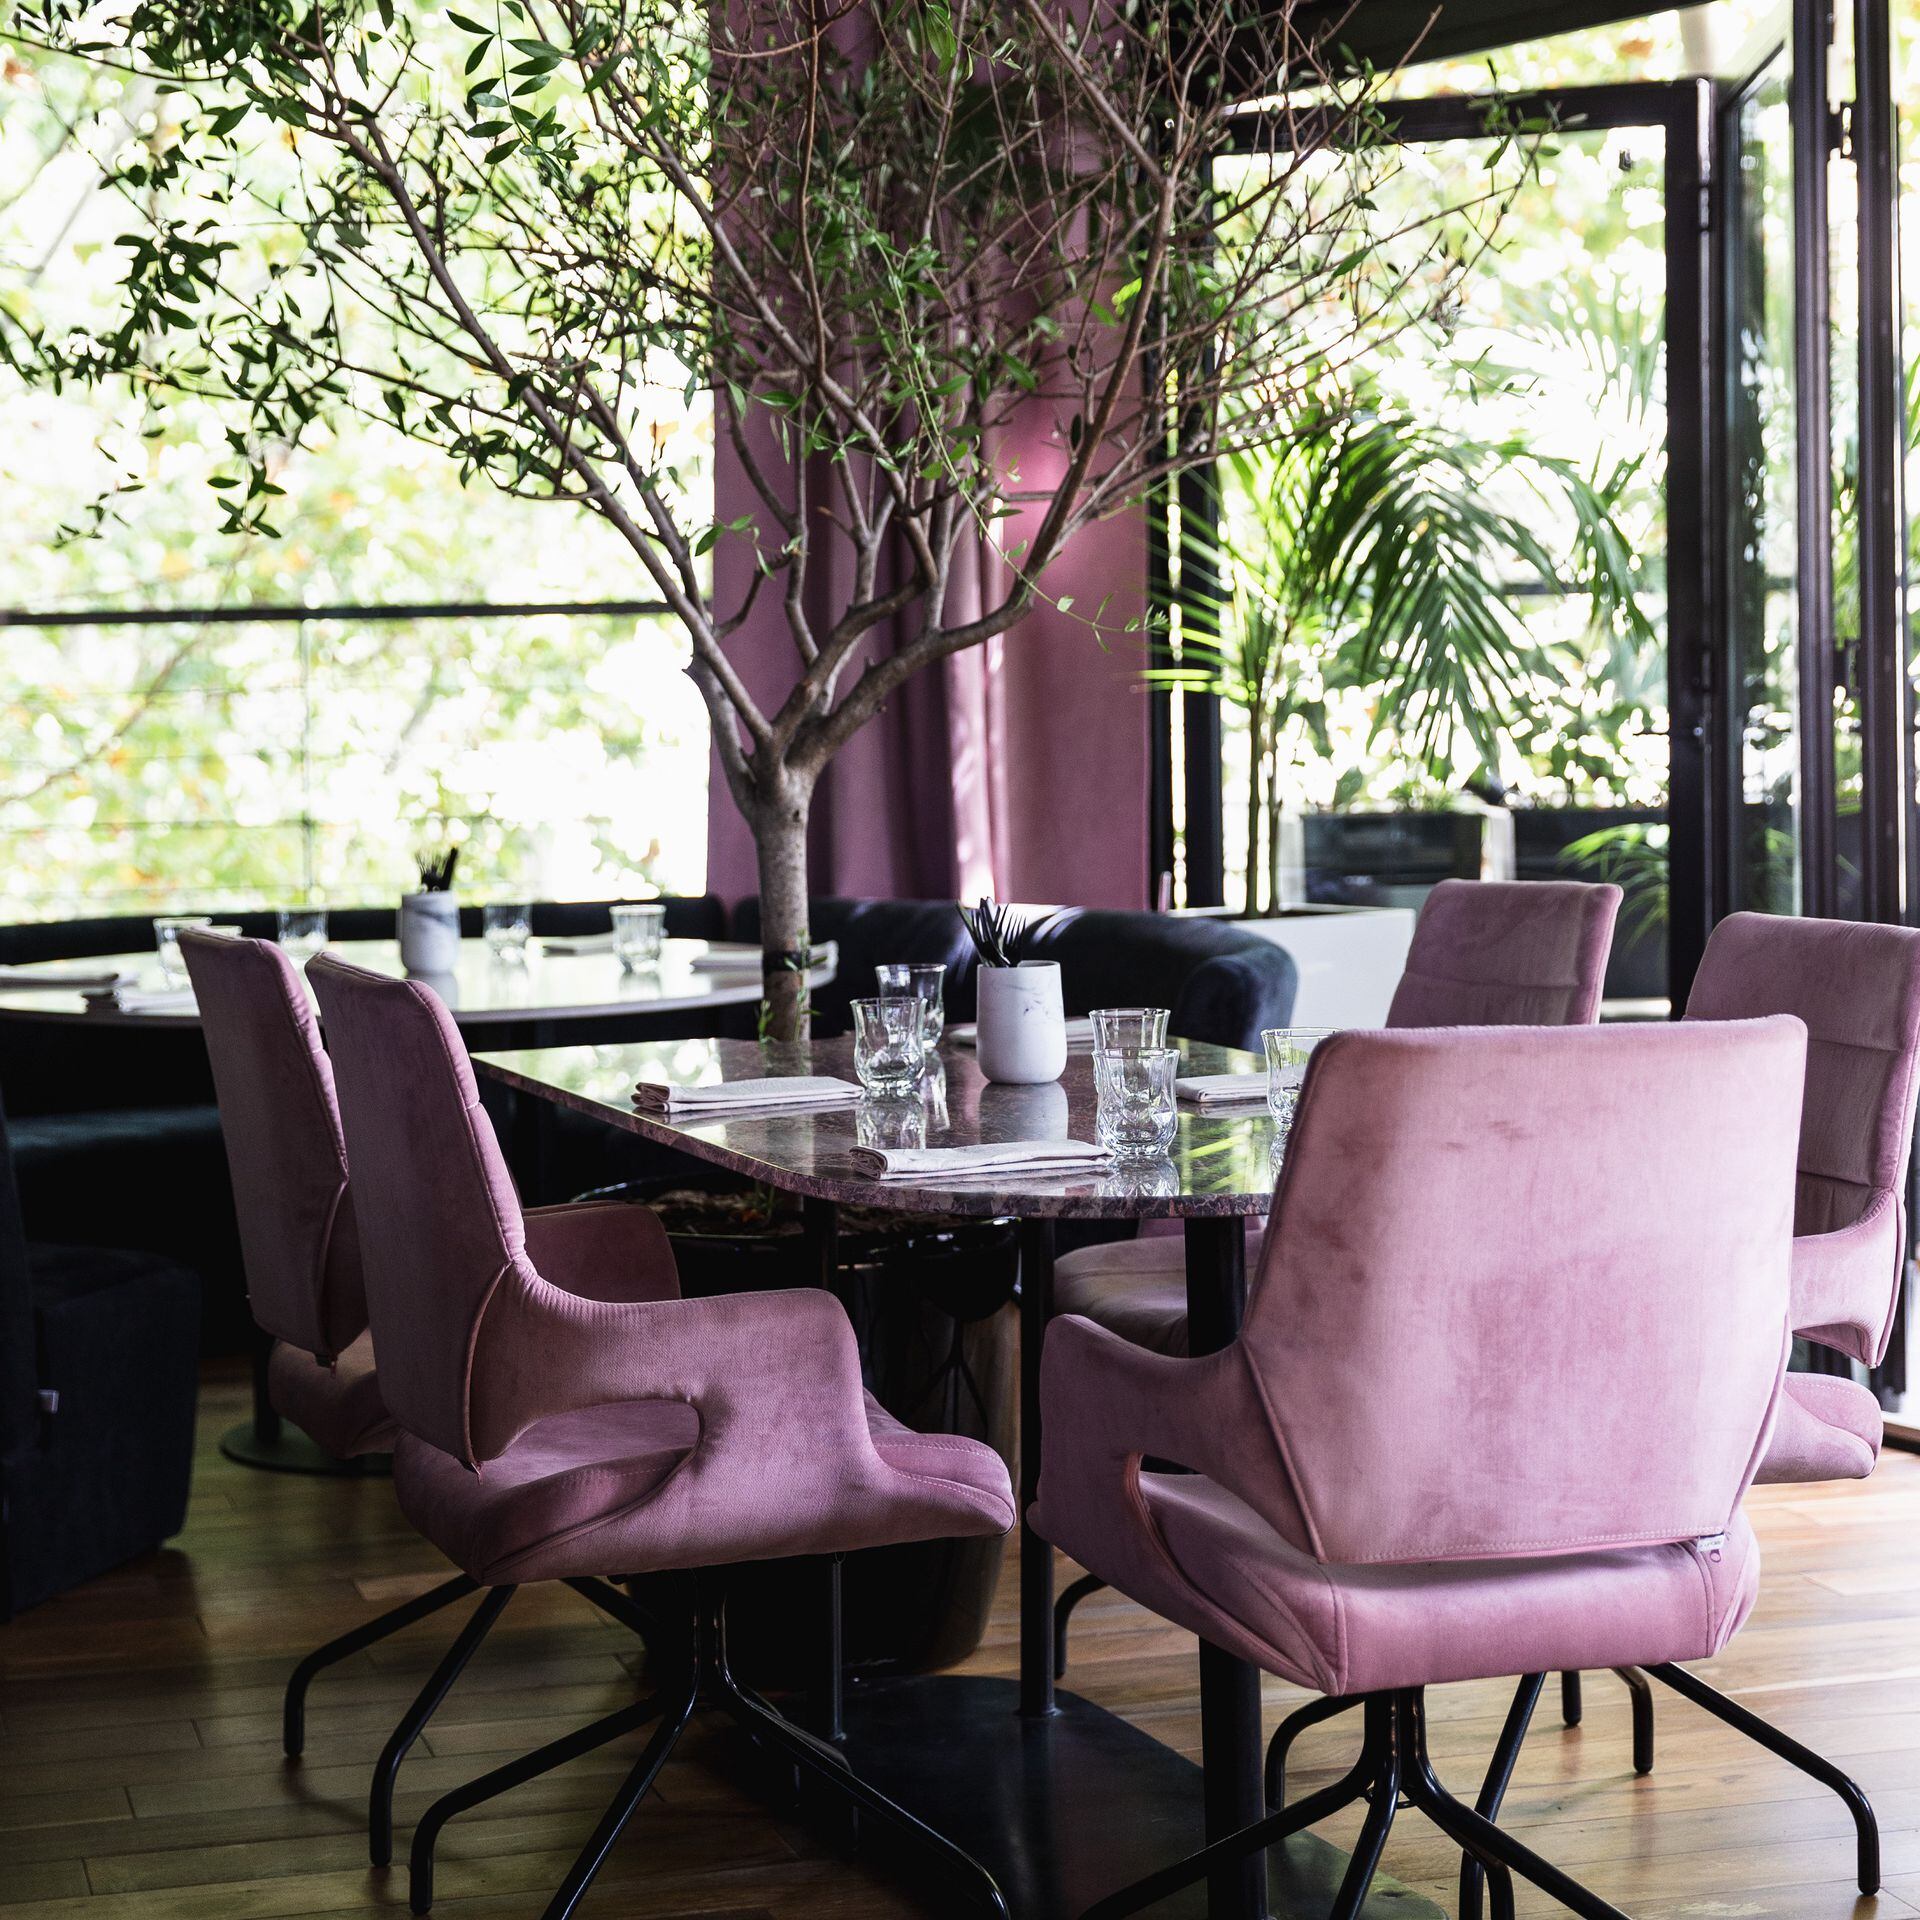 La mesa comunal con un olivo en el centro es una de las insignias de este restaurante que permanentemente busca la unión con la naturaleza.